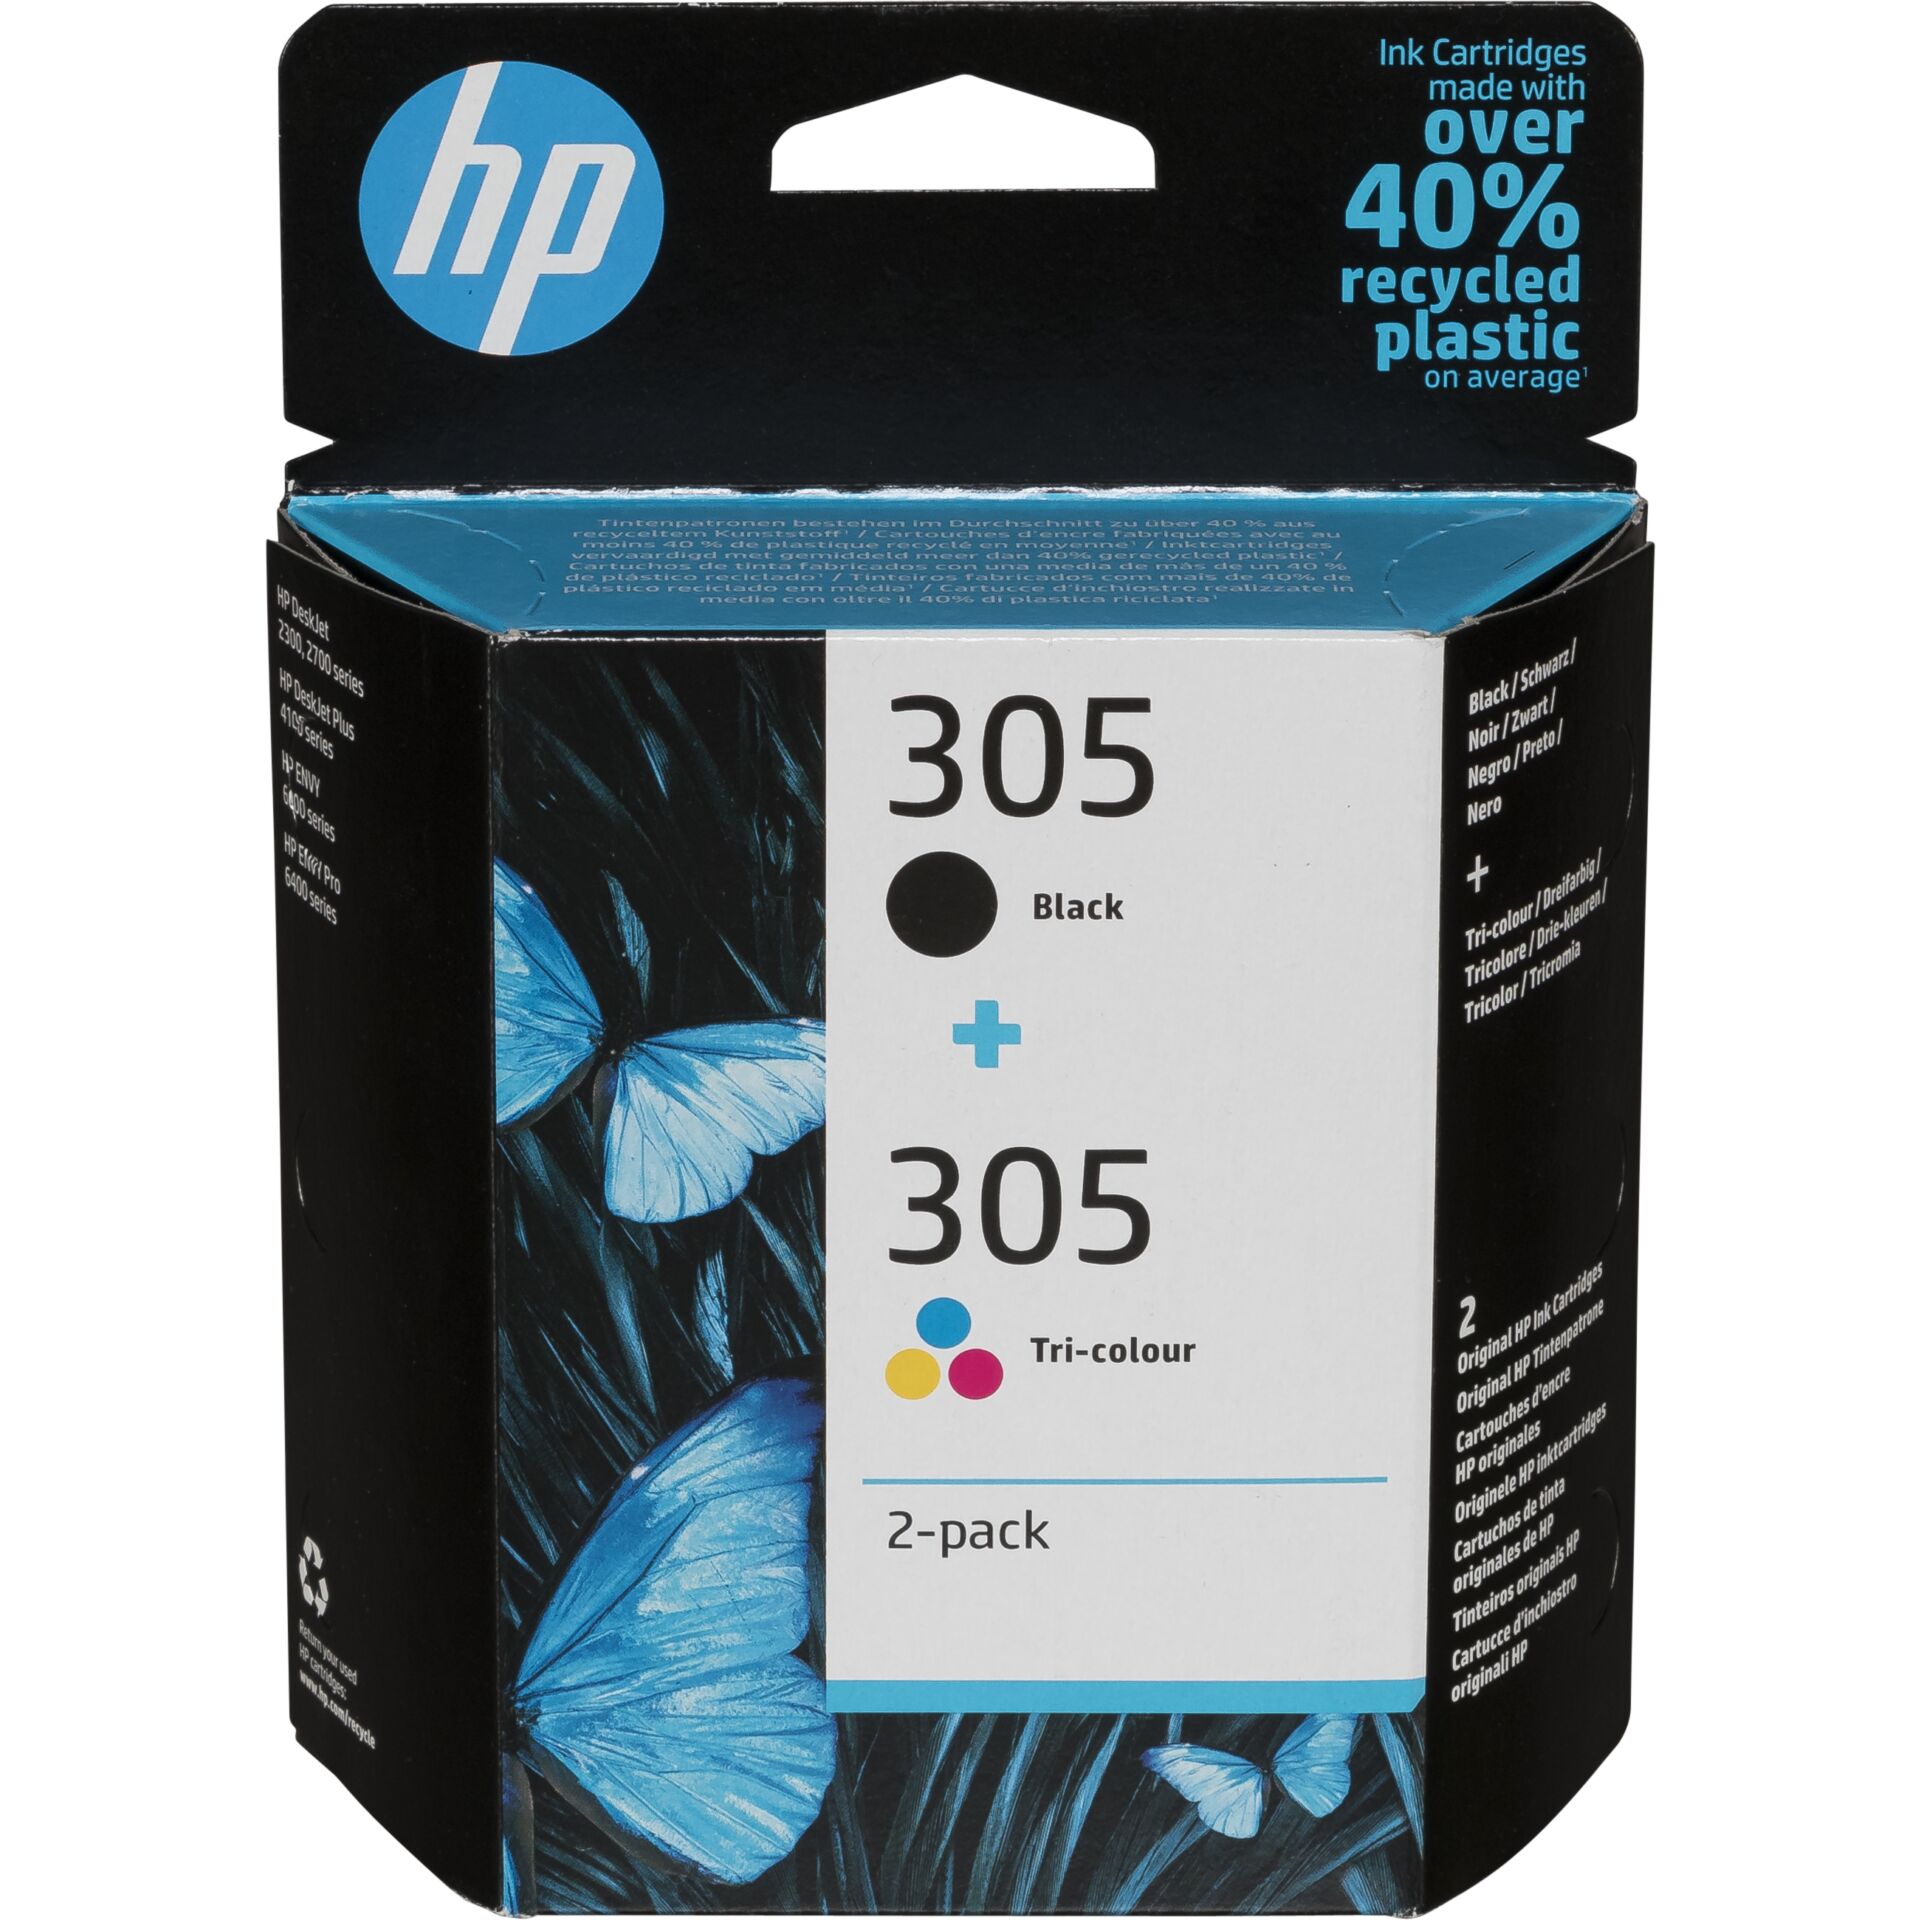 HP Druckkopf mit Tinte 305 schwarz/farbig, Original Zubehör Kapazität: 120 Seiten (schwarz), 100 Seiten (farbe)